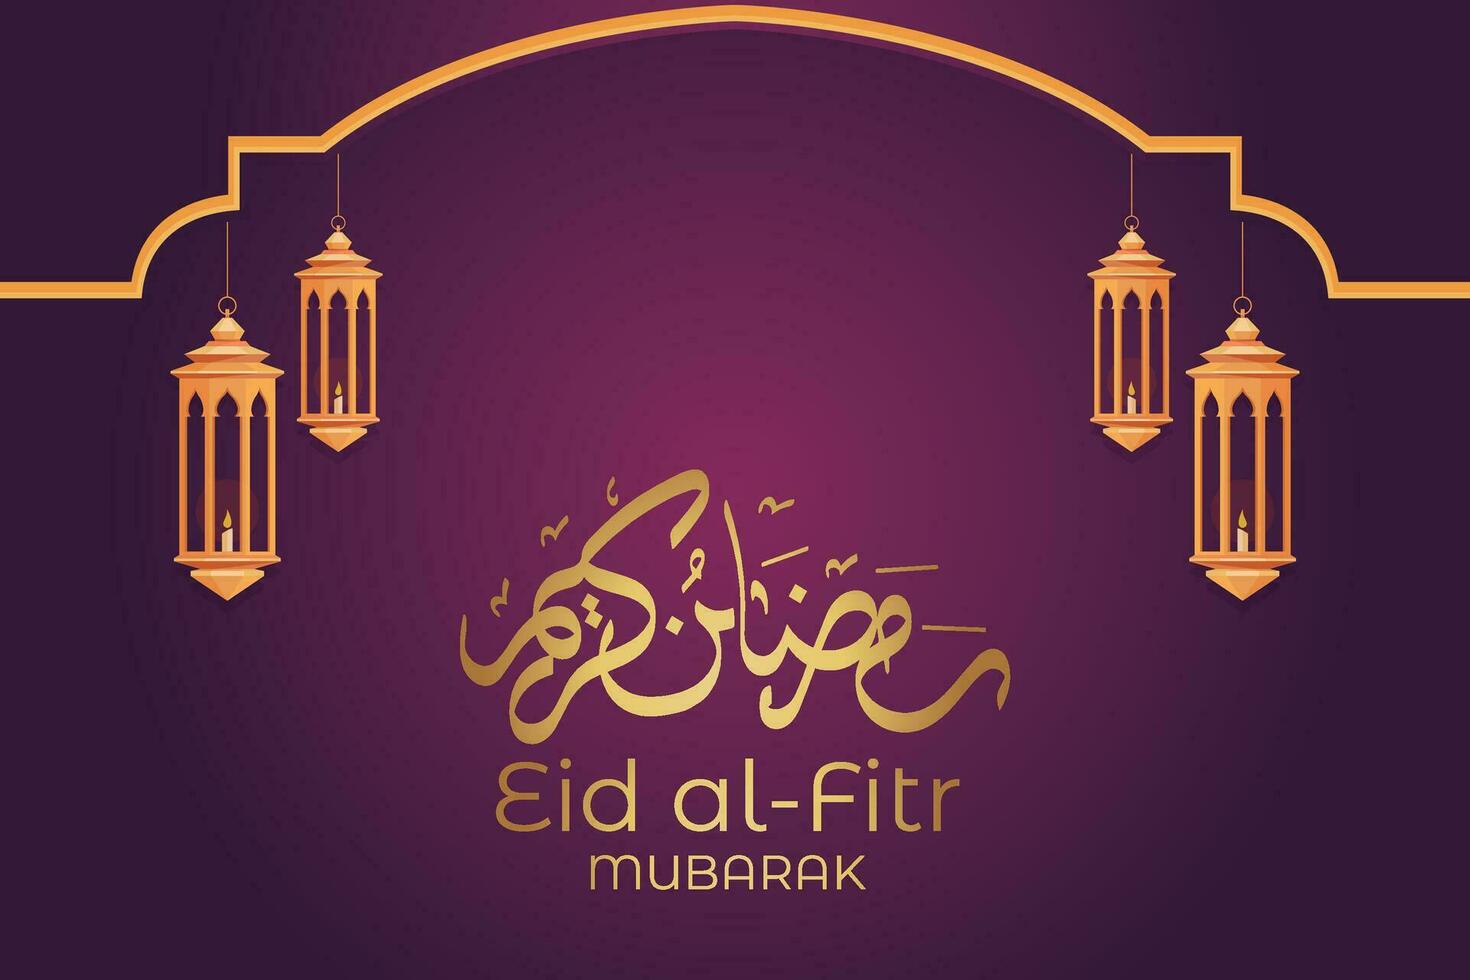 Ramadã eid Mubarak cumprimento cartão com mesquita silhueta livre vetor ilustração